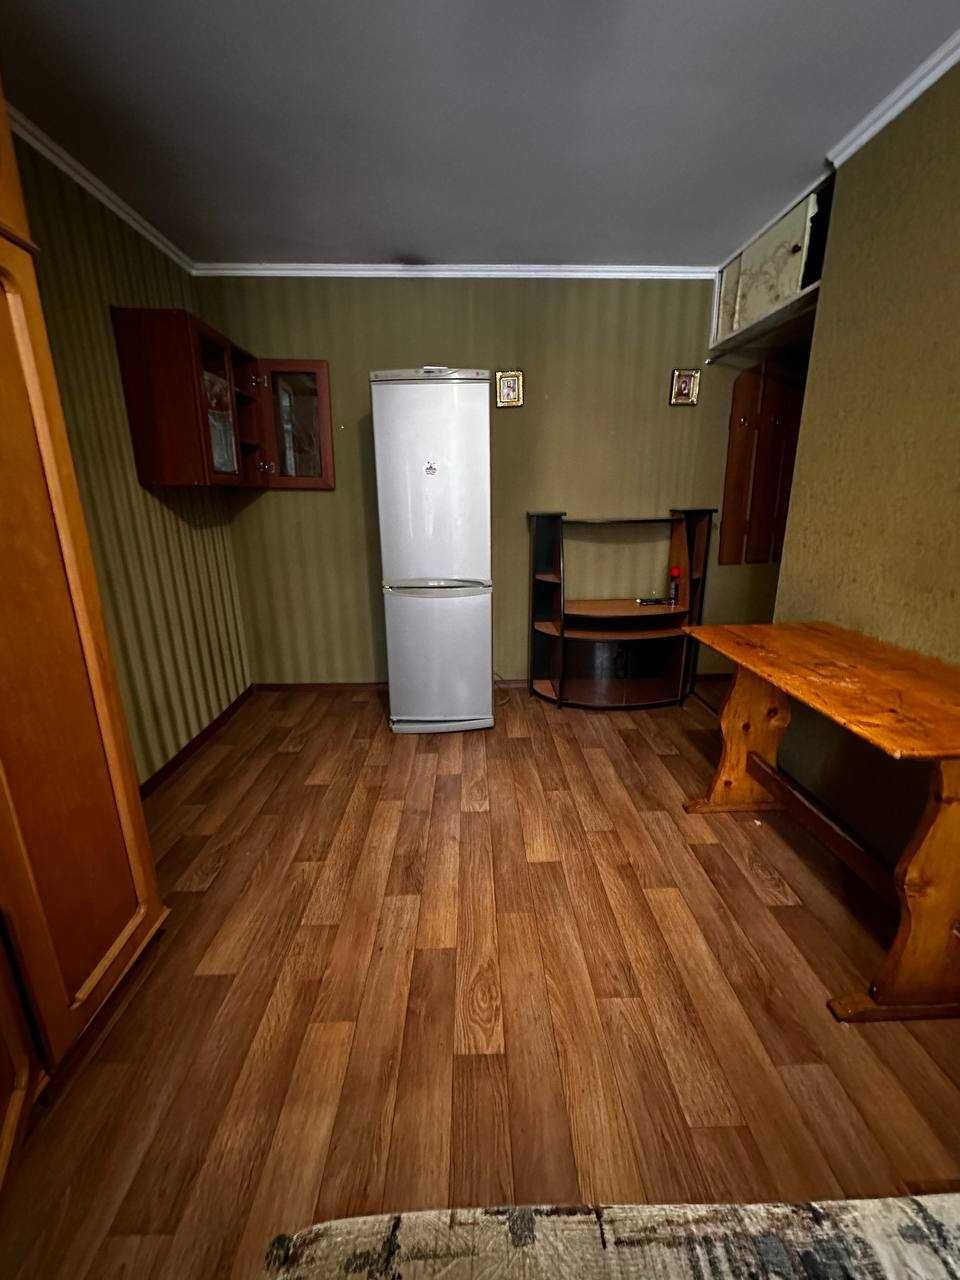 Терміново!Продам кімнату на Львівське шосе за супер ціною 10500$!